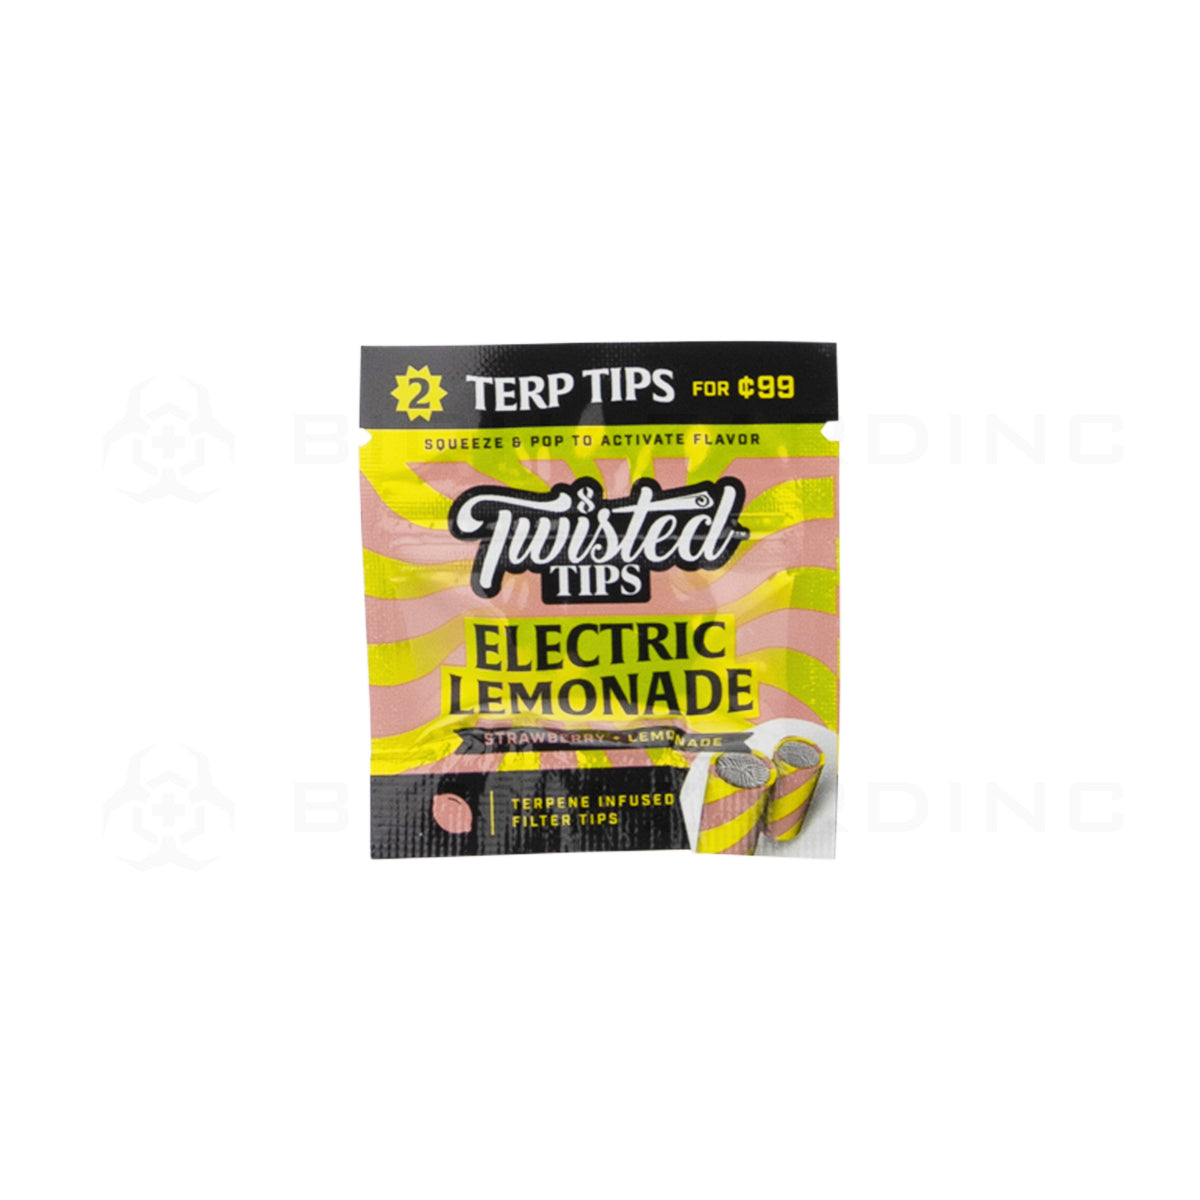 Twisted Tips | 'Retail Display' Terpene Infused 2 Packs | 24 Count Paper Tips Twisted Hemp Lemonade  